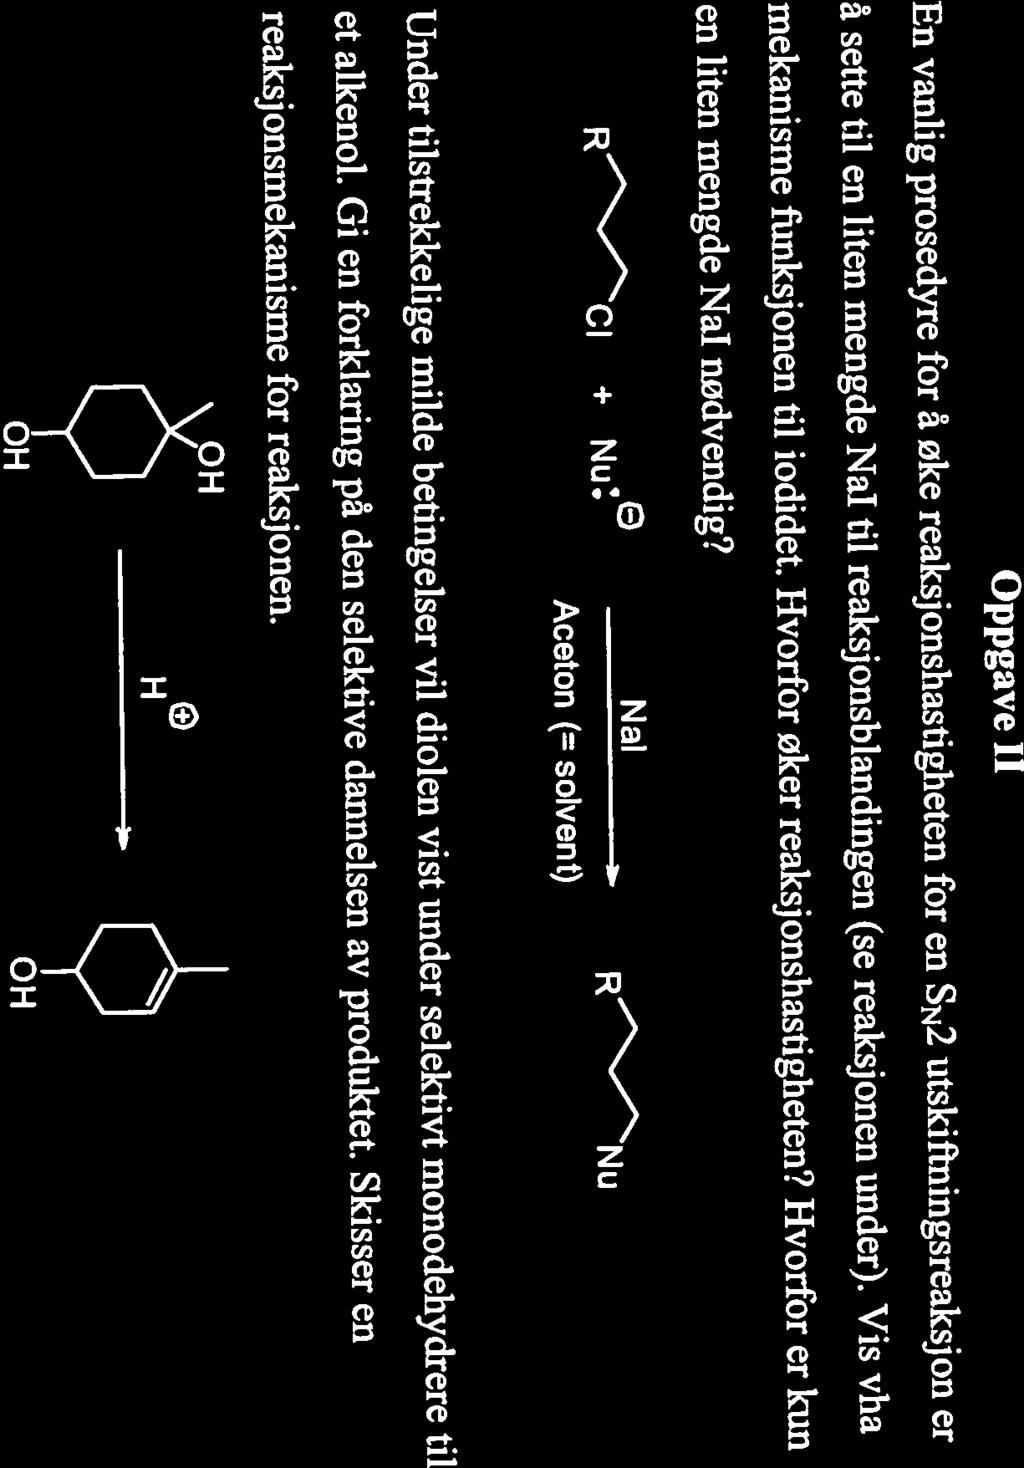 H 0 Nal R Nu stereogene (kirale) sentrene i utgangstoffet 1 og produktet 2. fremstilles CH3CH2MgBr? c) Hva er betydningen av (-)-tegnet i navnet til alkoholen 1?